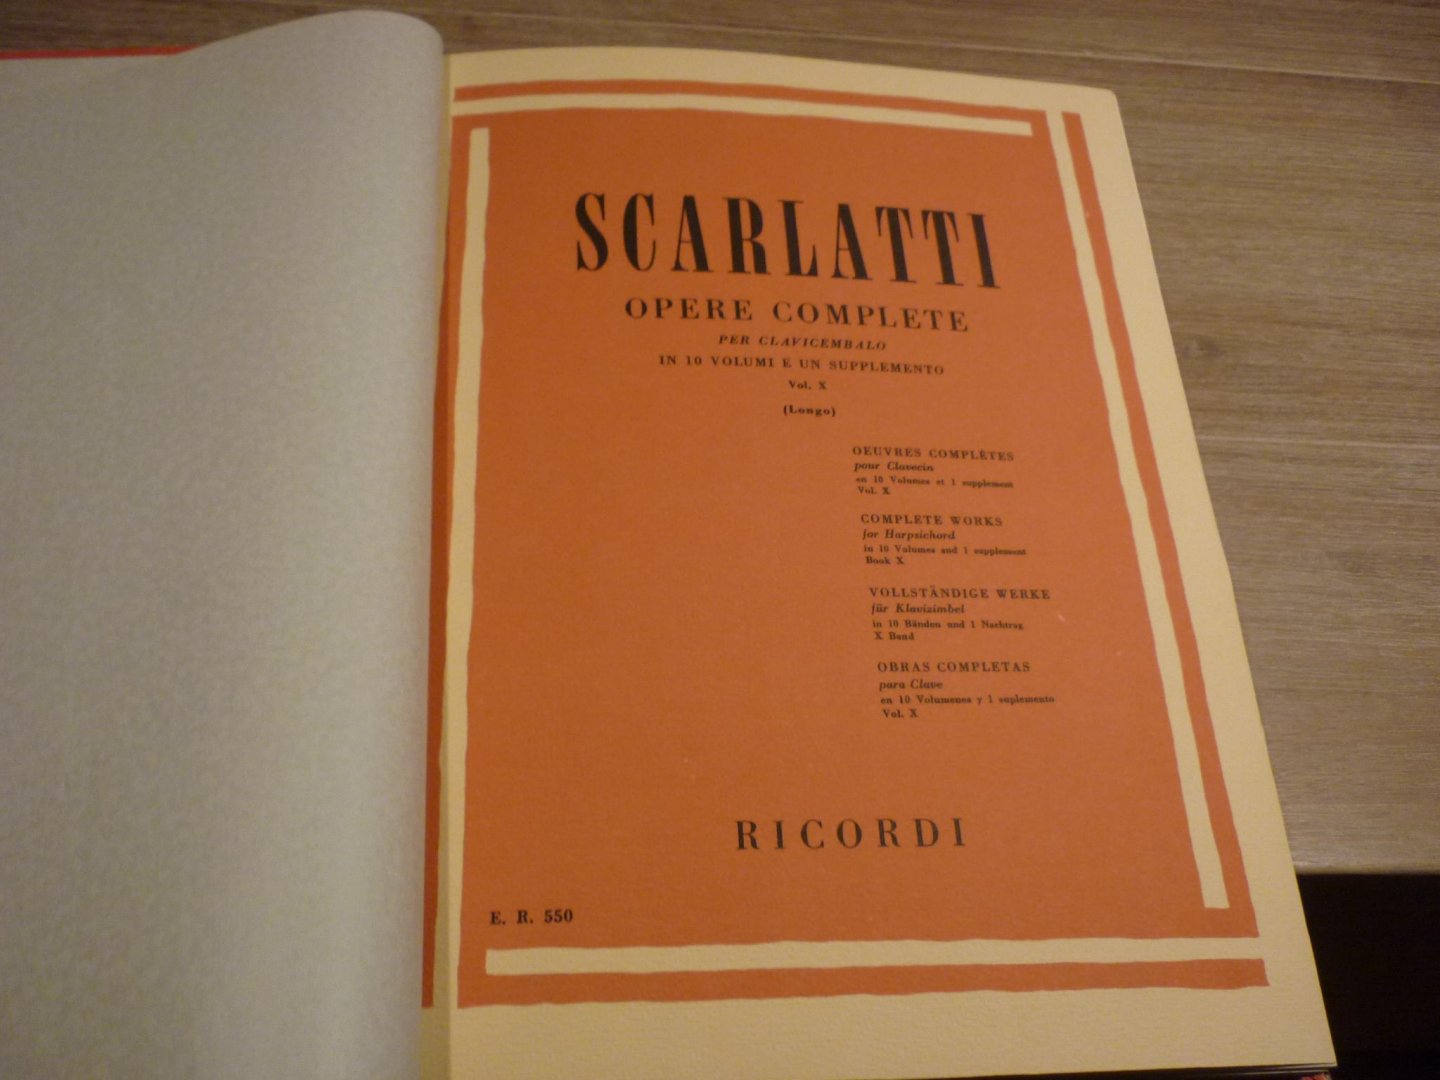 Scarlatti; Domenico (1685–1757) - Opere Complete Per Clav. Vol. 10; Suites No. 451 - 500; Voor Klavecimbel (of piano); Editor: Alessandro Longo